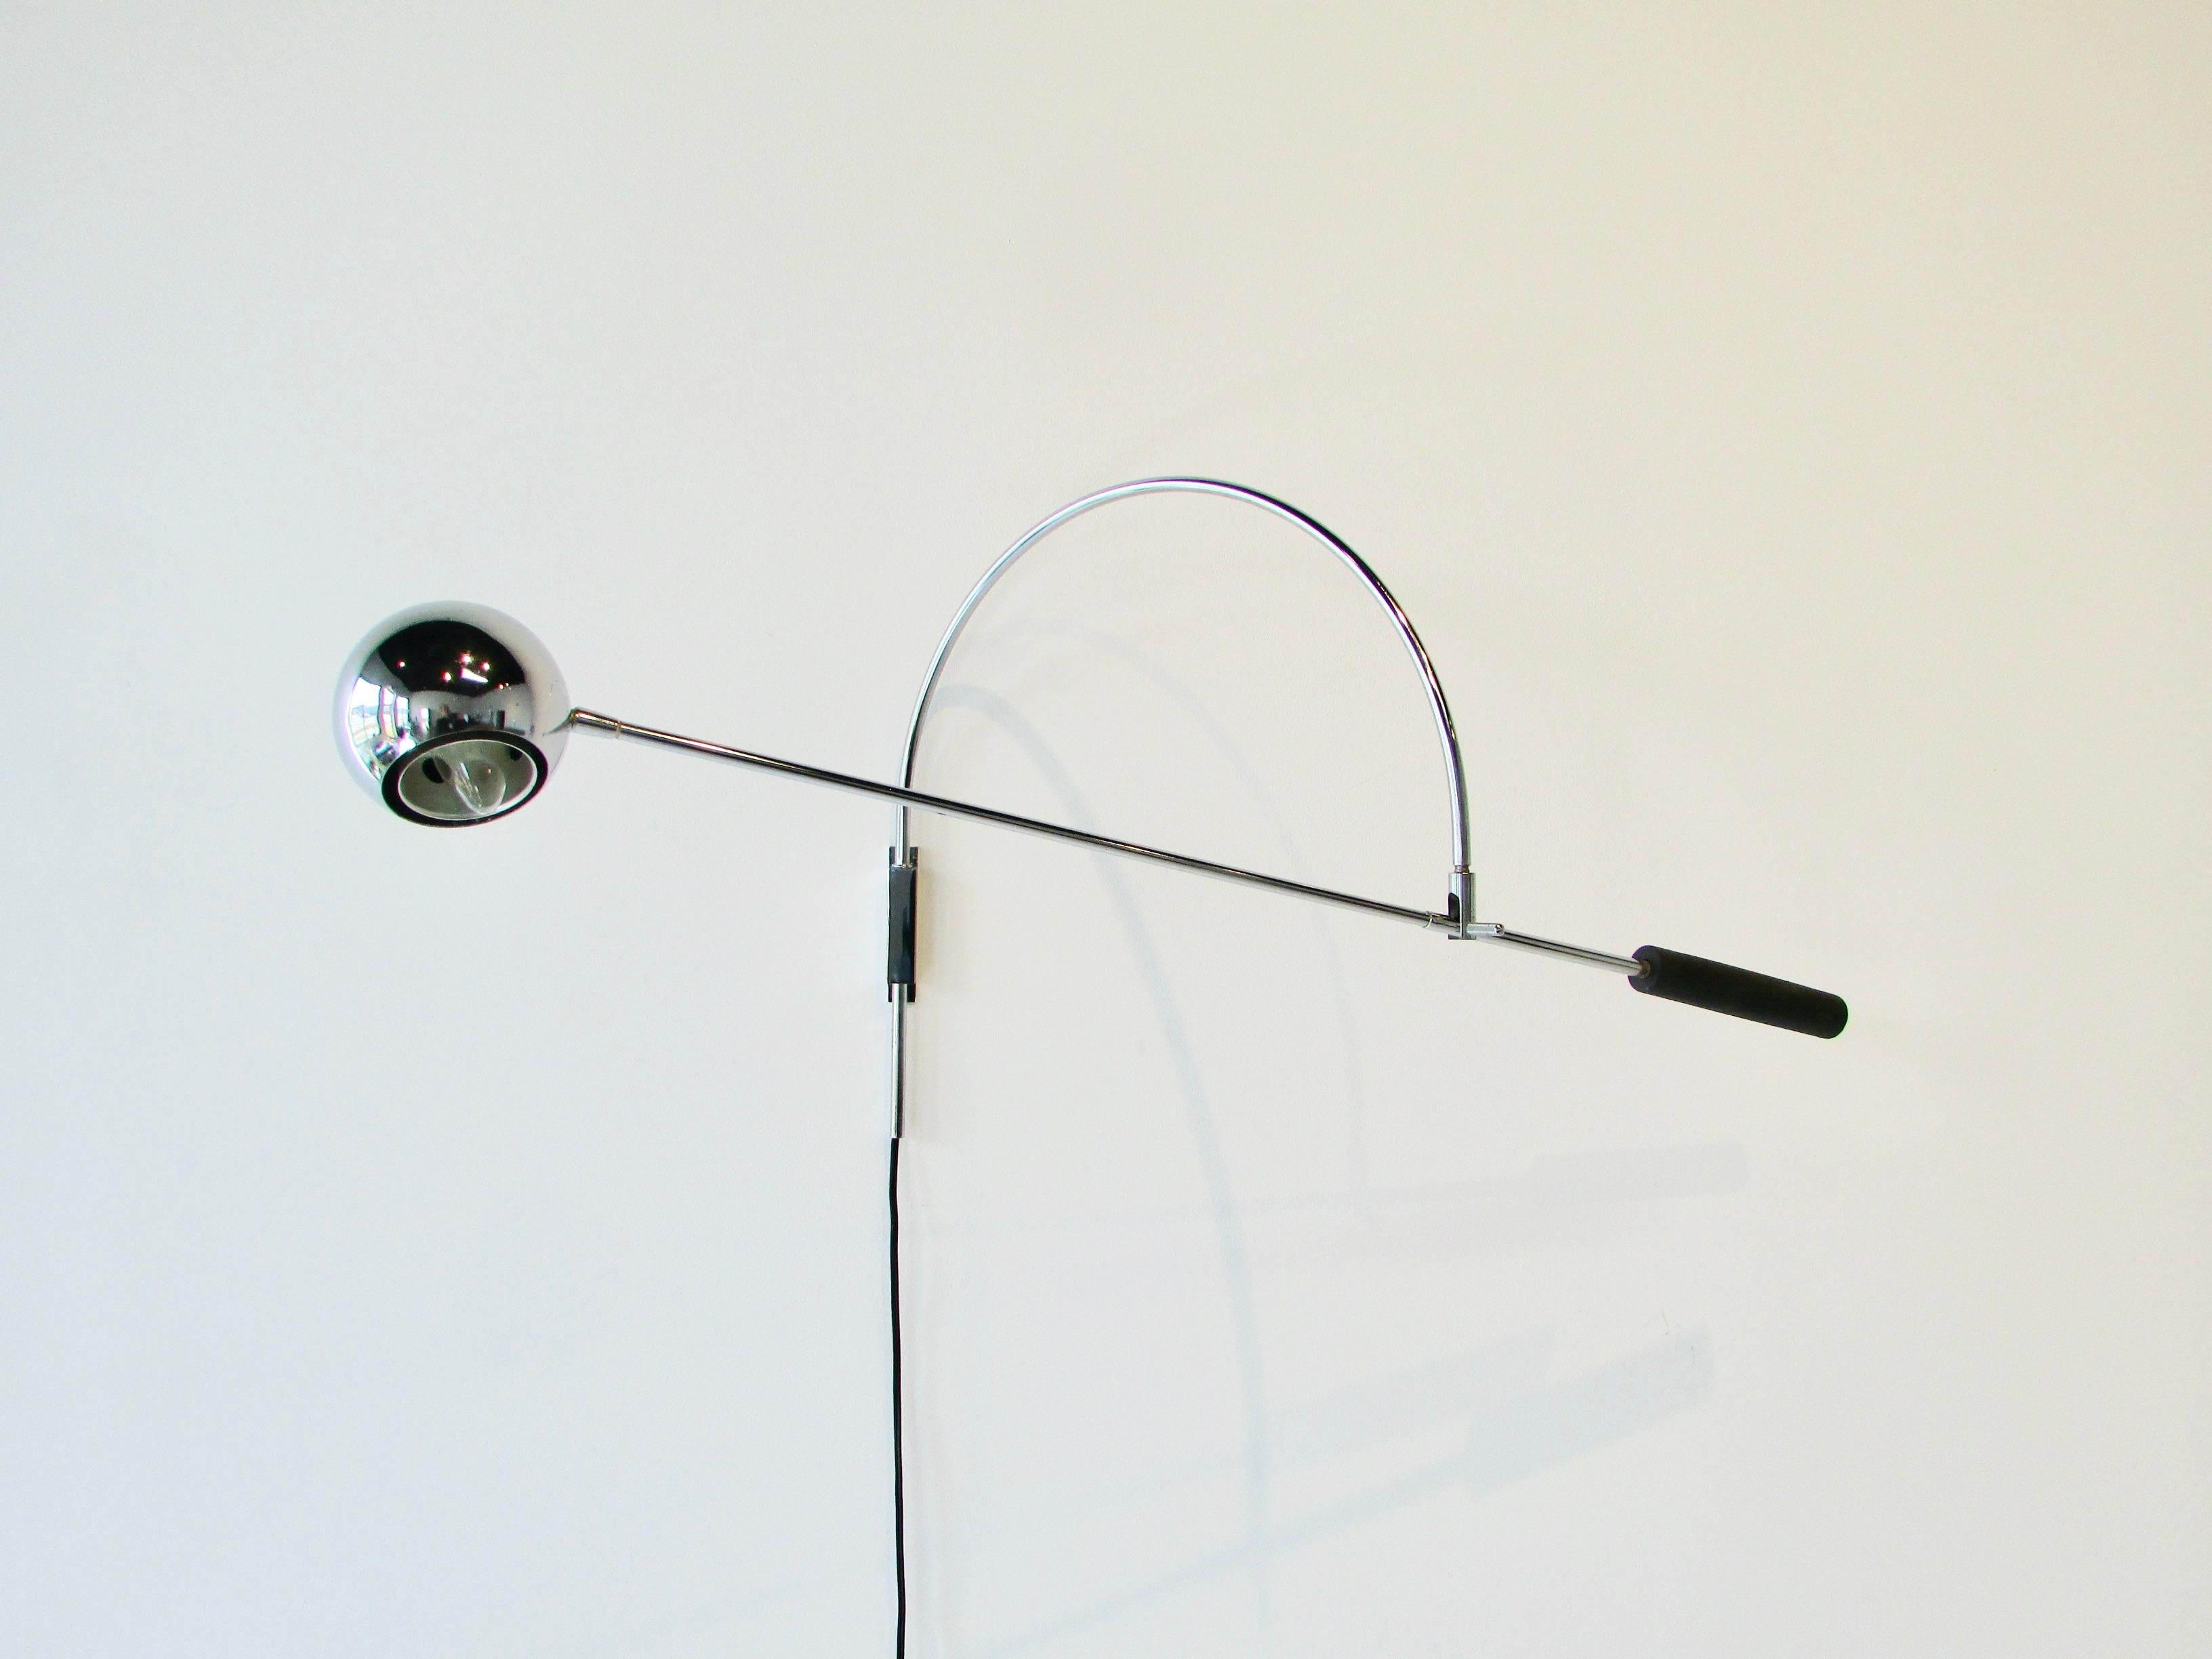 Arcing swivel and tilt counter balanced wall mounted task or reading lamp. Robert Sonneman design for Sonneman lighting. Horizontal shaft is 32